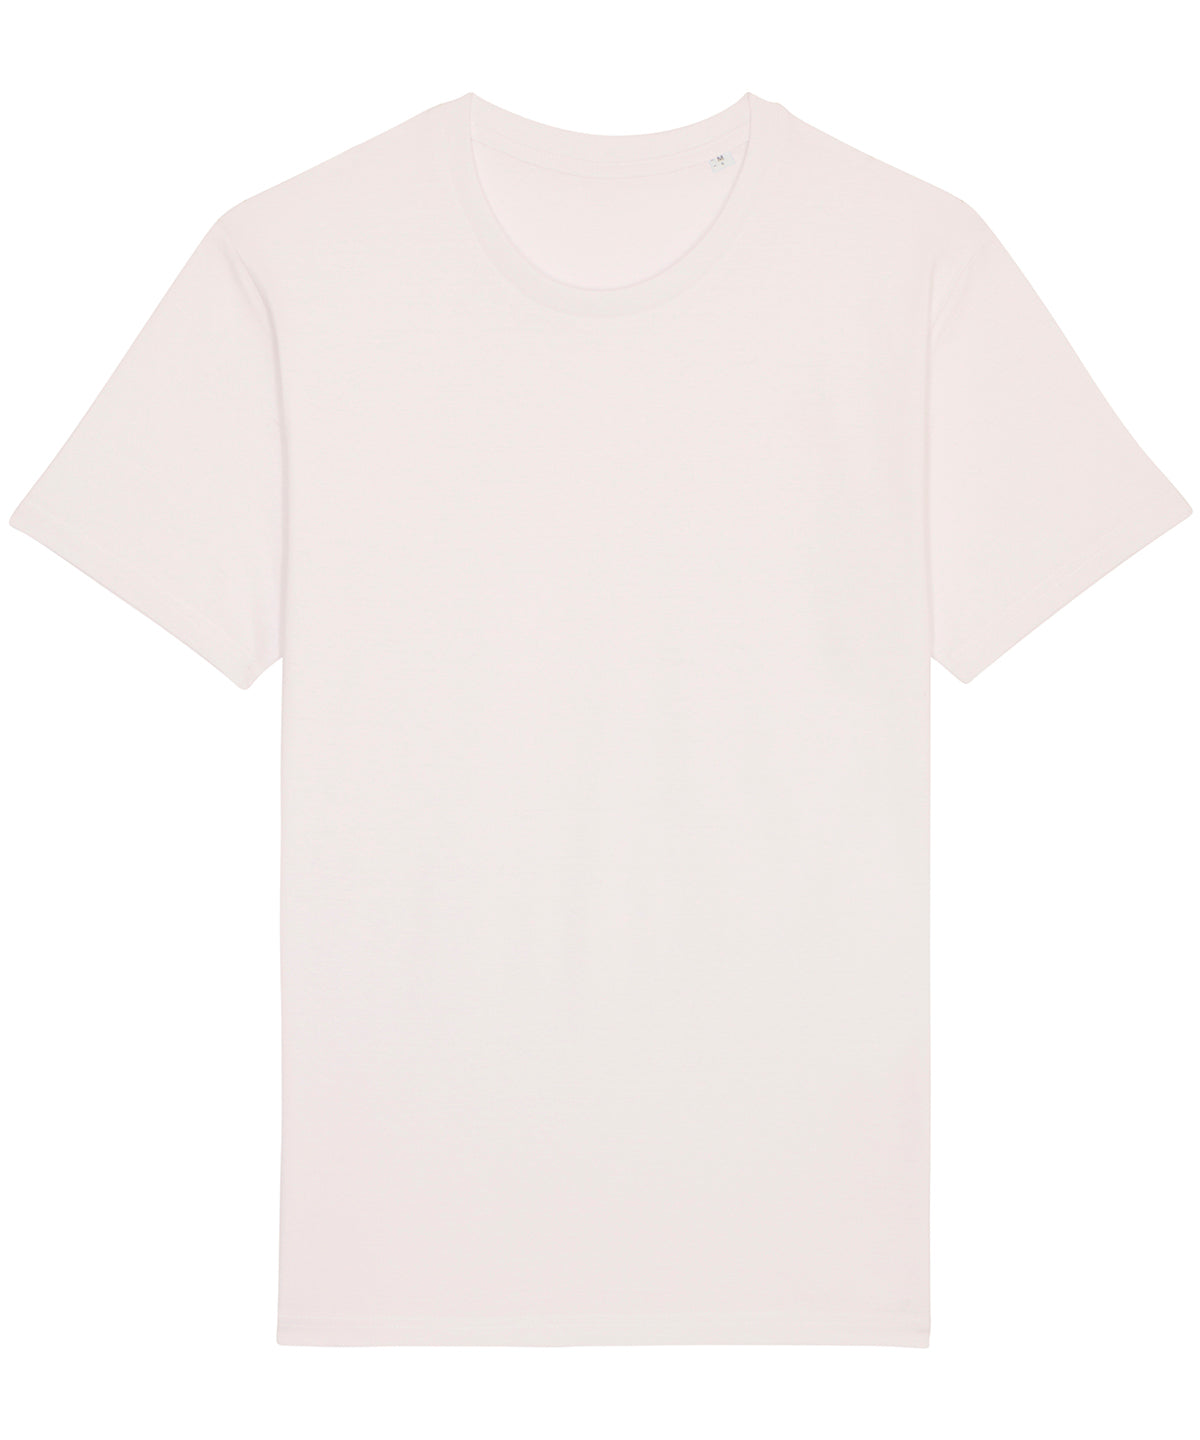 Stanley/Stella Rocker The Essential Unisex T-Shirt  Vintage White